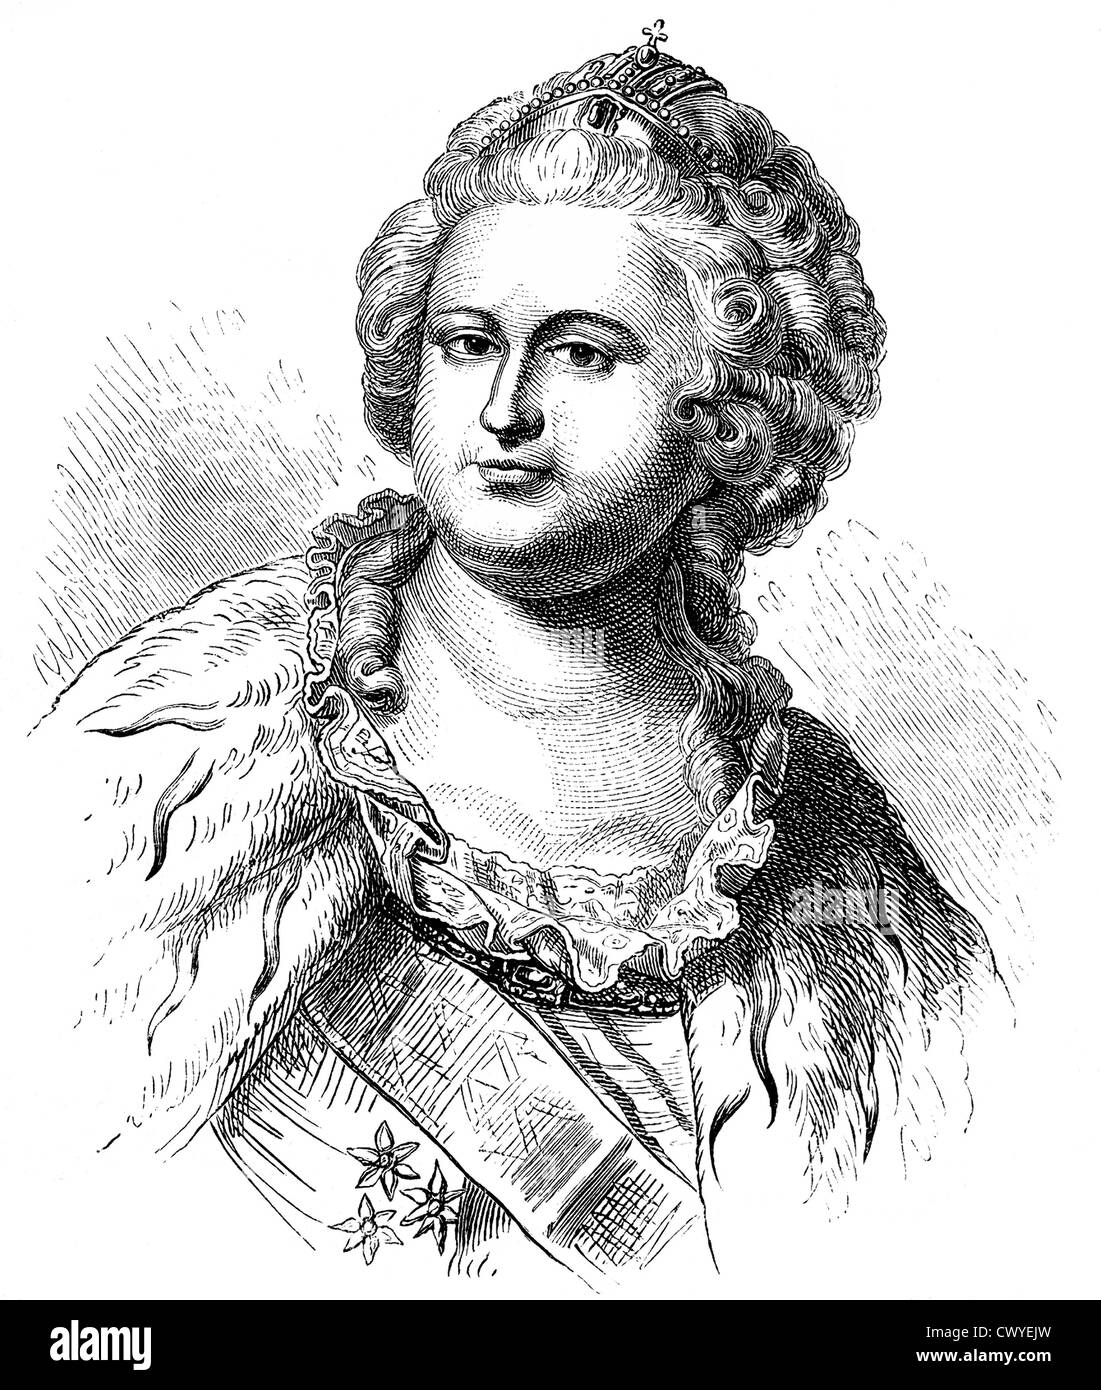 Catherine II oder Katharina die große, 1729-1796, Kaiserin von Russland, Herzogin von Holstein-Gottorp und Herrscher von Jever Stockfoto